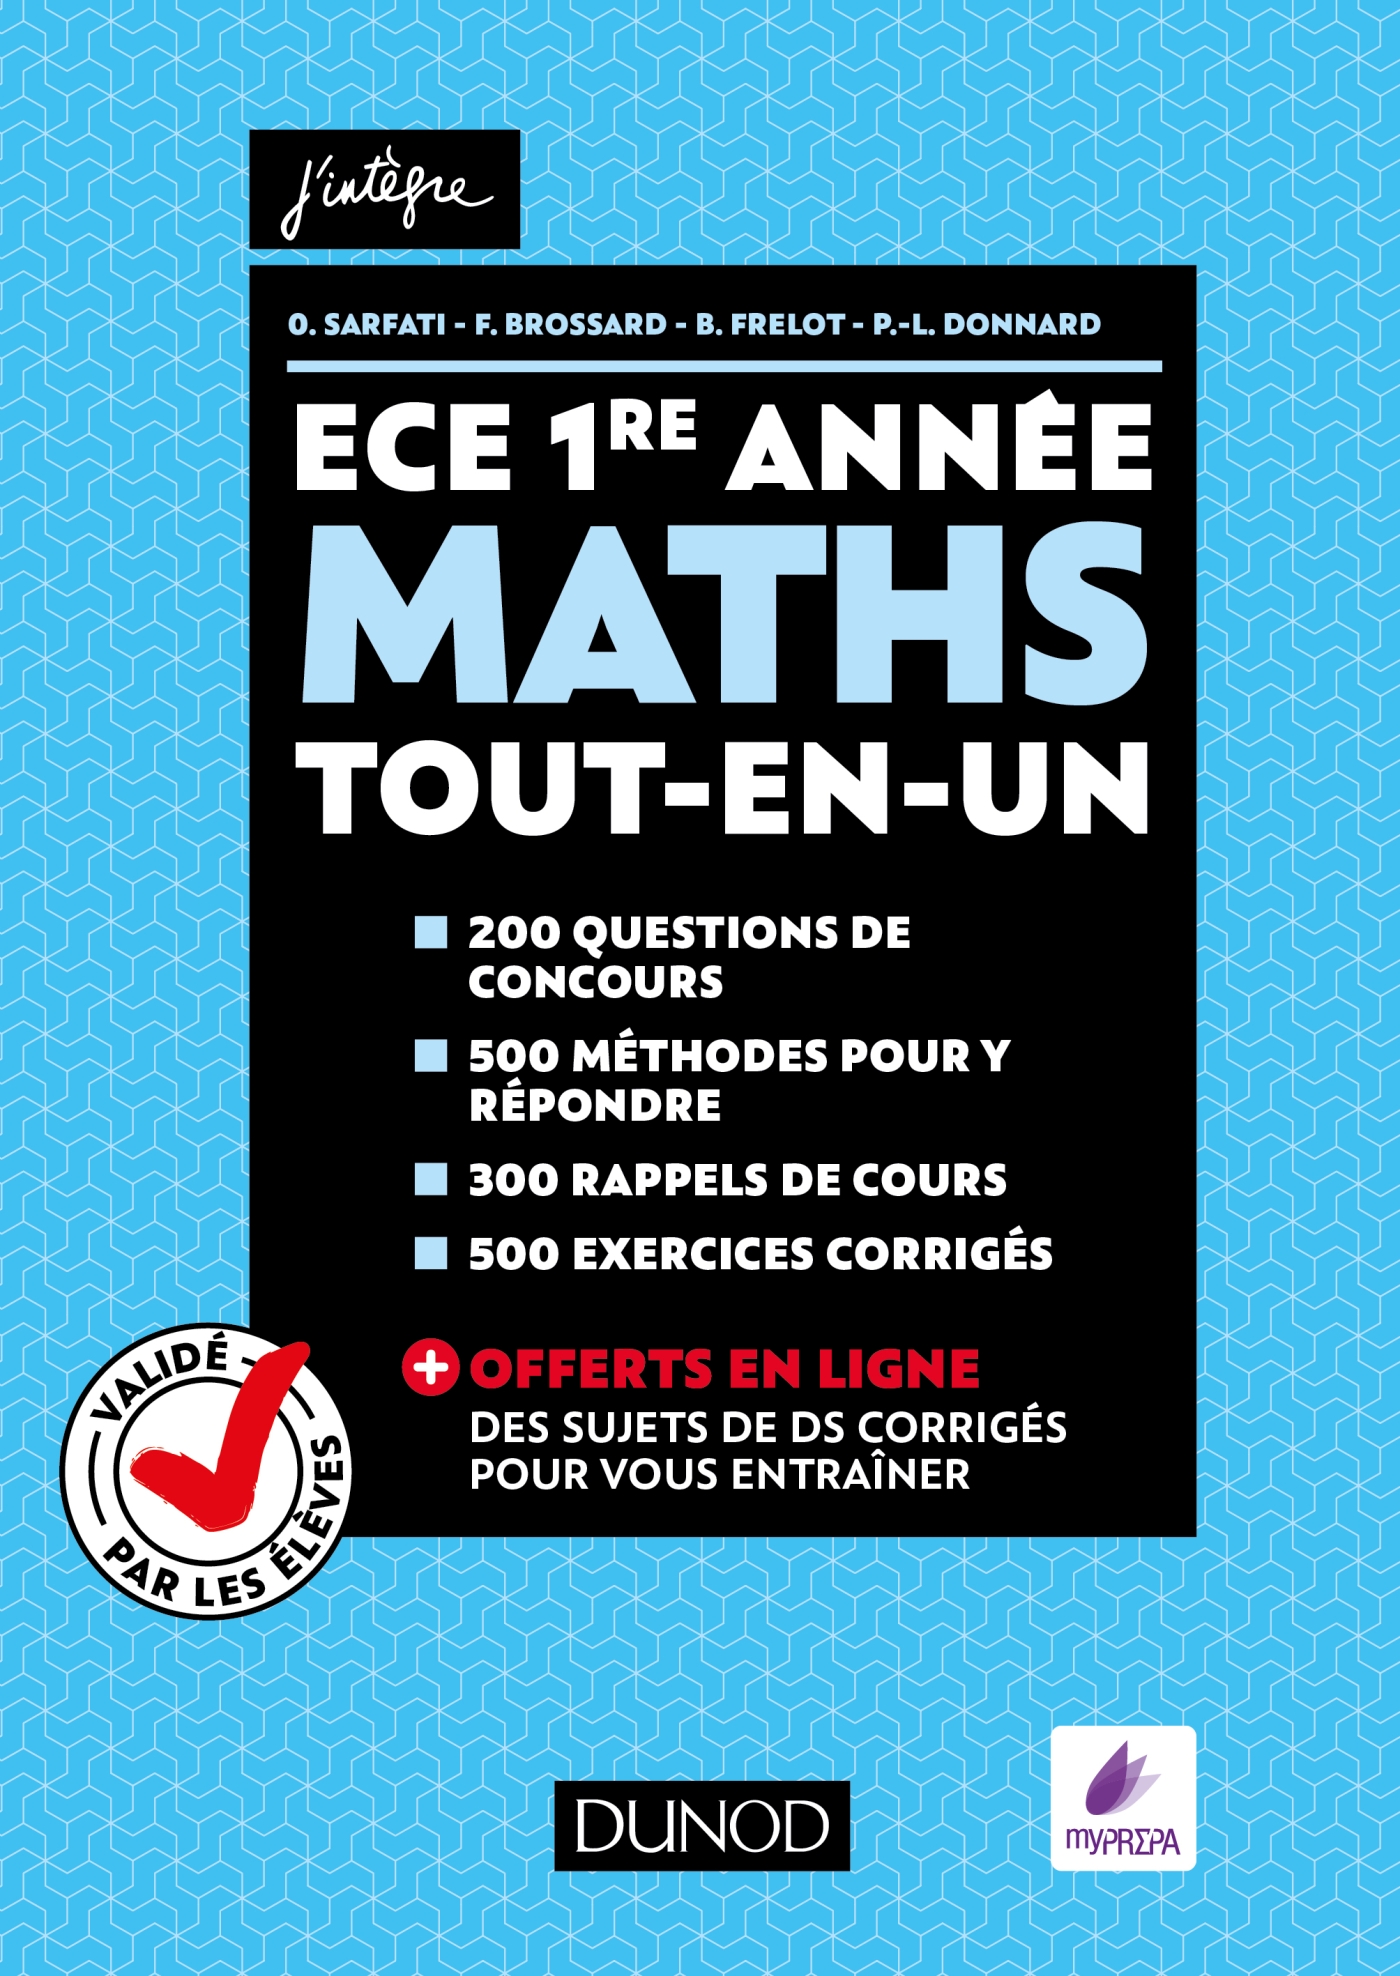 Maths Ece 1re Annee Tout En Un Valide Par Les Eleves Livre Et Ebook Mathematiques De Olivier Sarfati Dunod